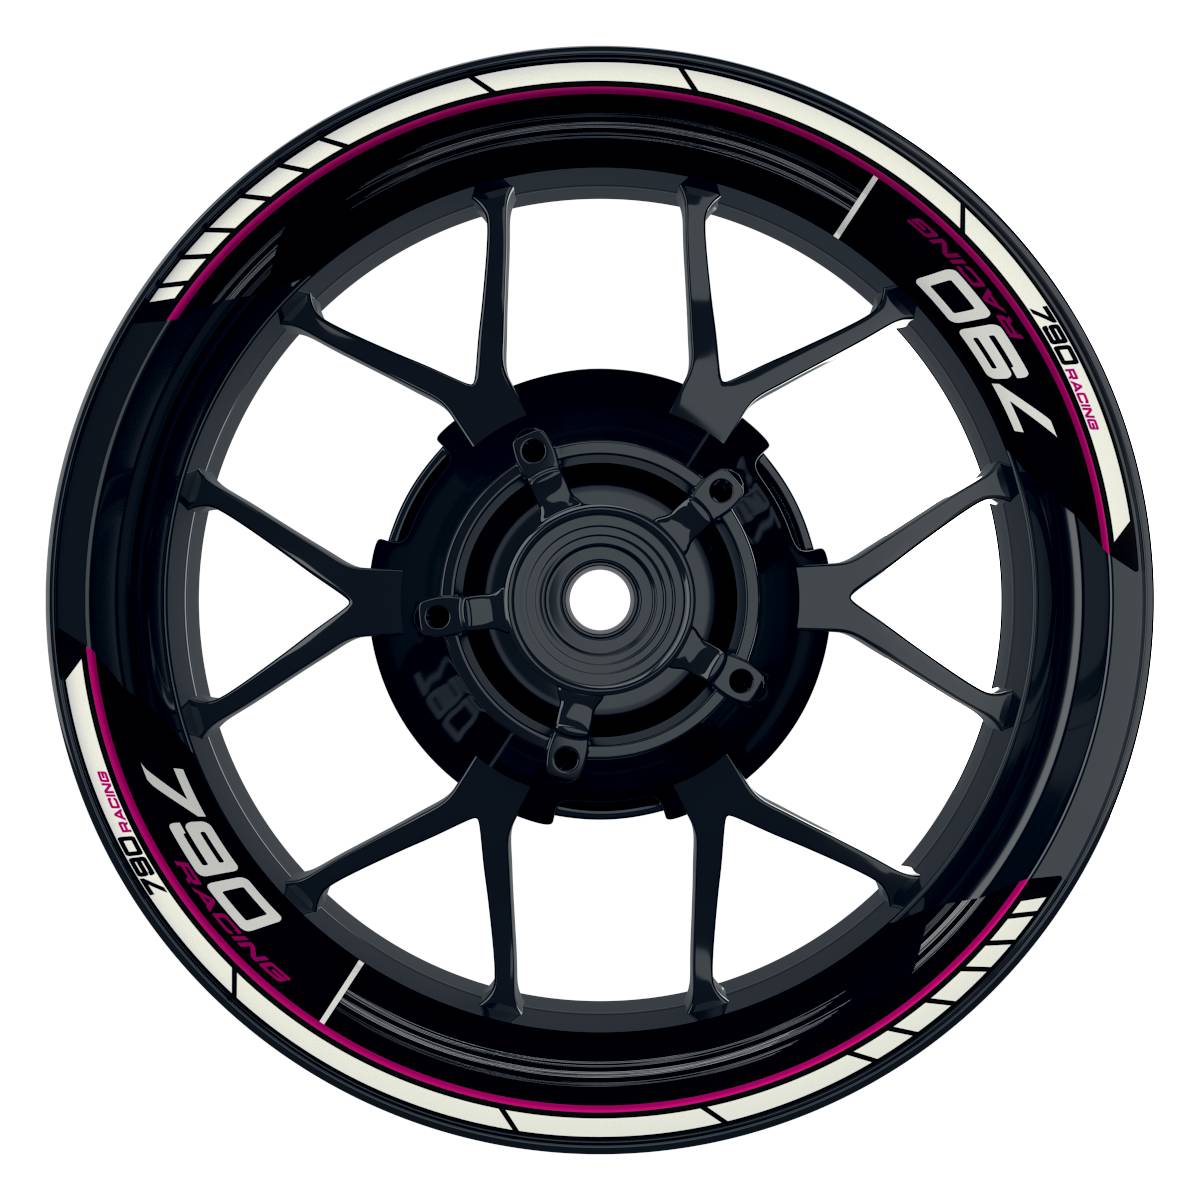 KTM Racing 790 Scratched schwarz pink Frontansicht